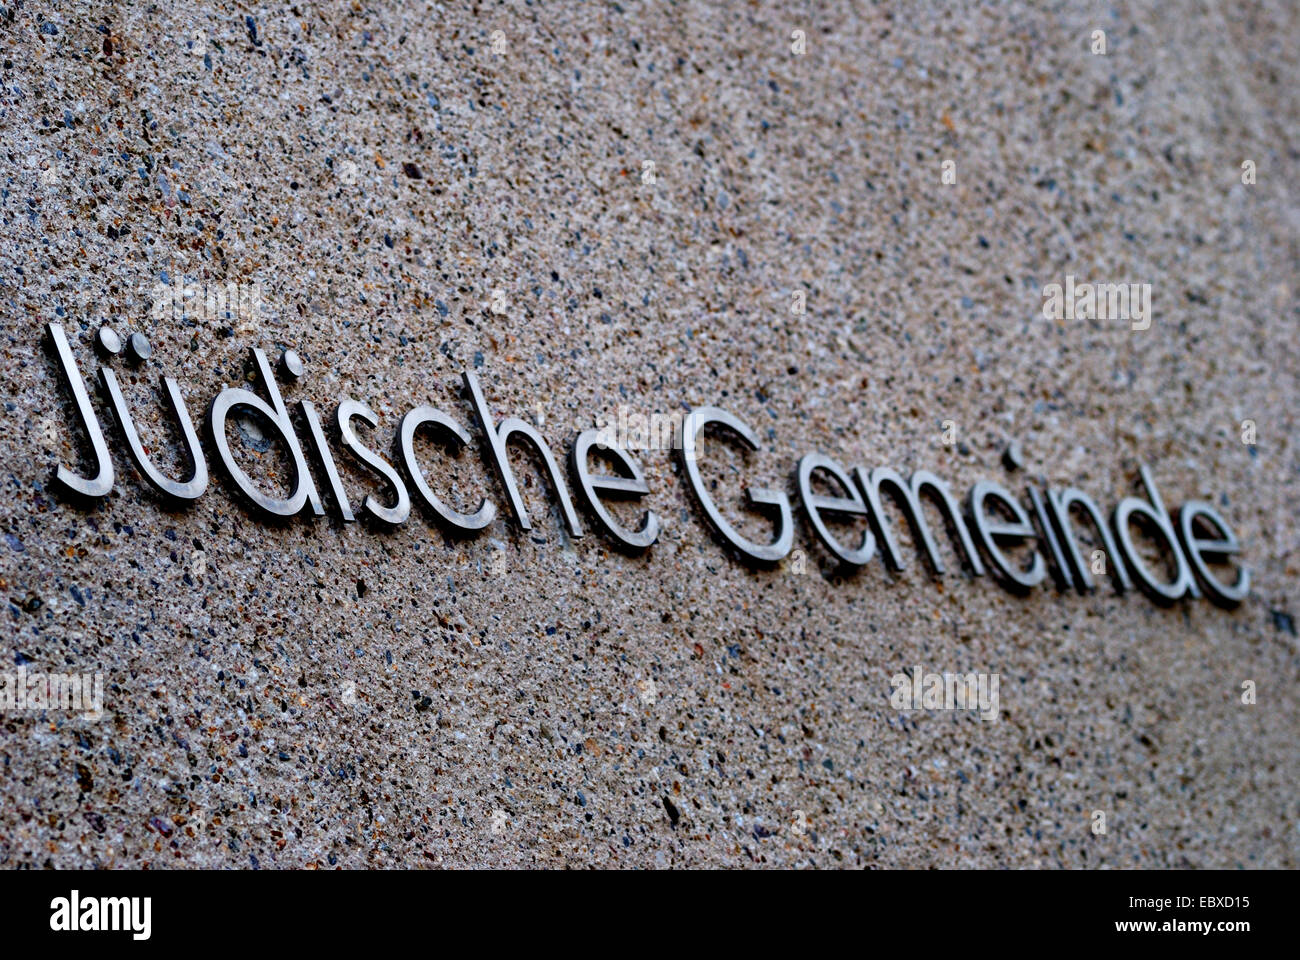 Wand mit Label "Juedische Gemeinde" Synagoge, jüdische Gemeinde, Bochum, Ruhrgebiet, Nordrhein-Westfalen, Deutschland Stockfoto